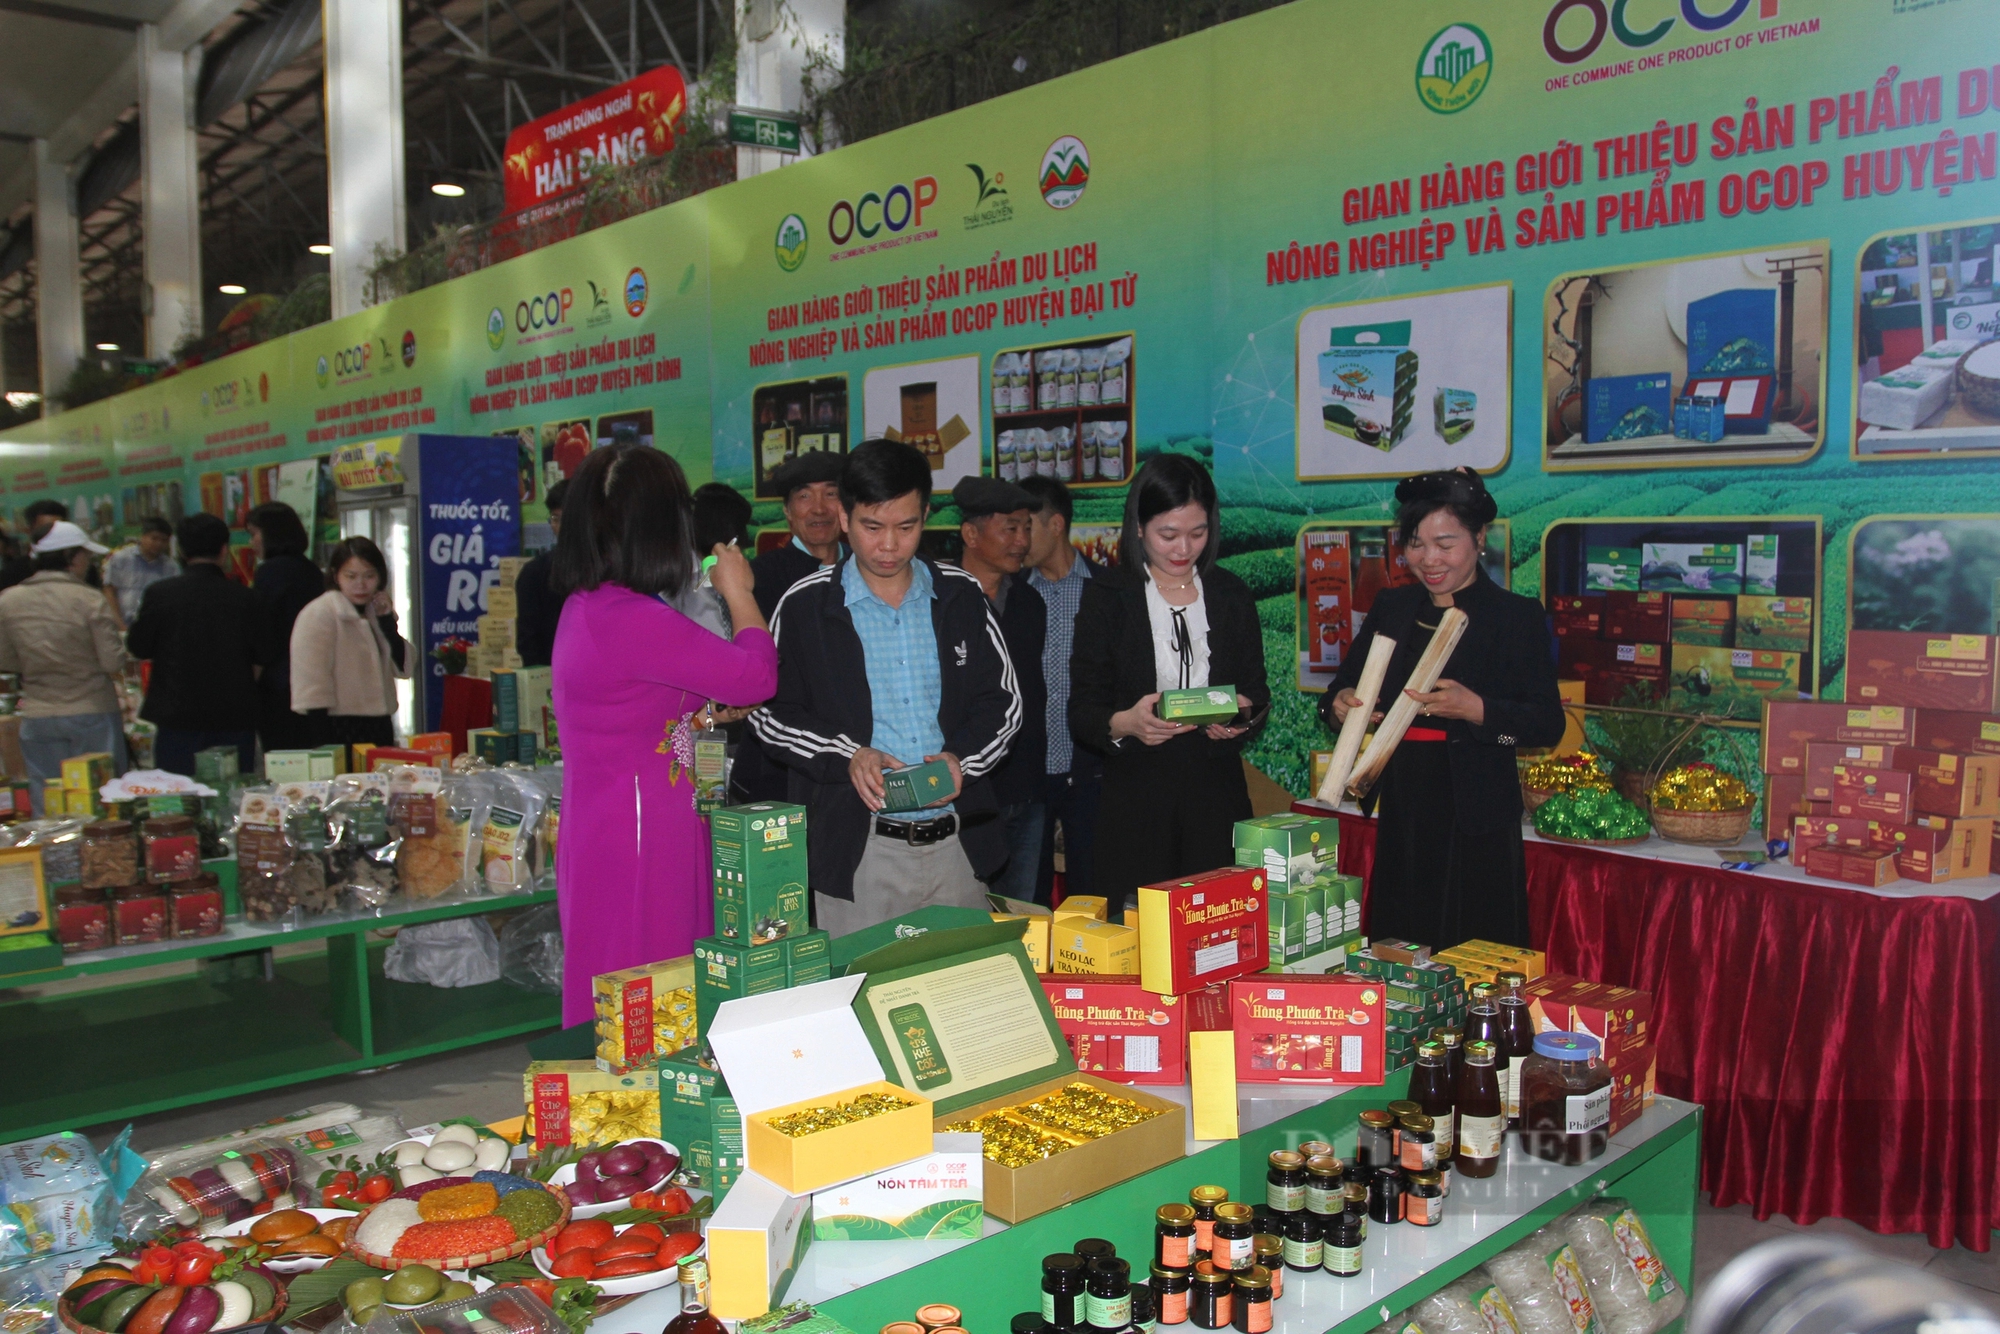 Của ngon vật lạ OCOP tại ngày Hội kết nối cung cầu du lịch nông nghiệp, nông thôn tỉnh Thái Nguyên- Ảnh 3.